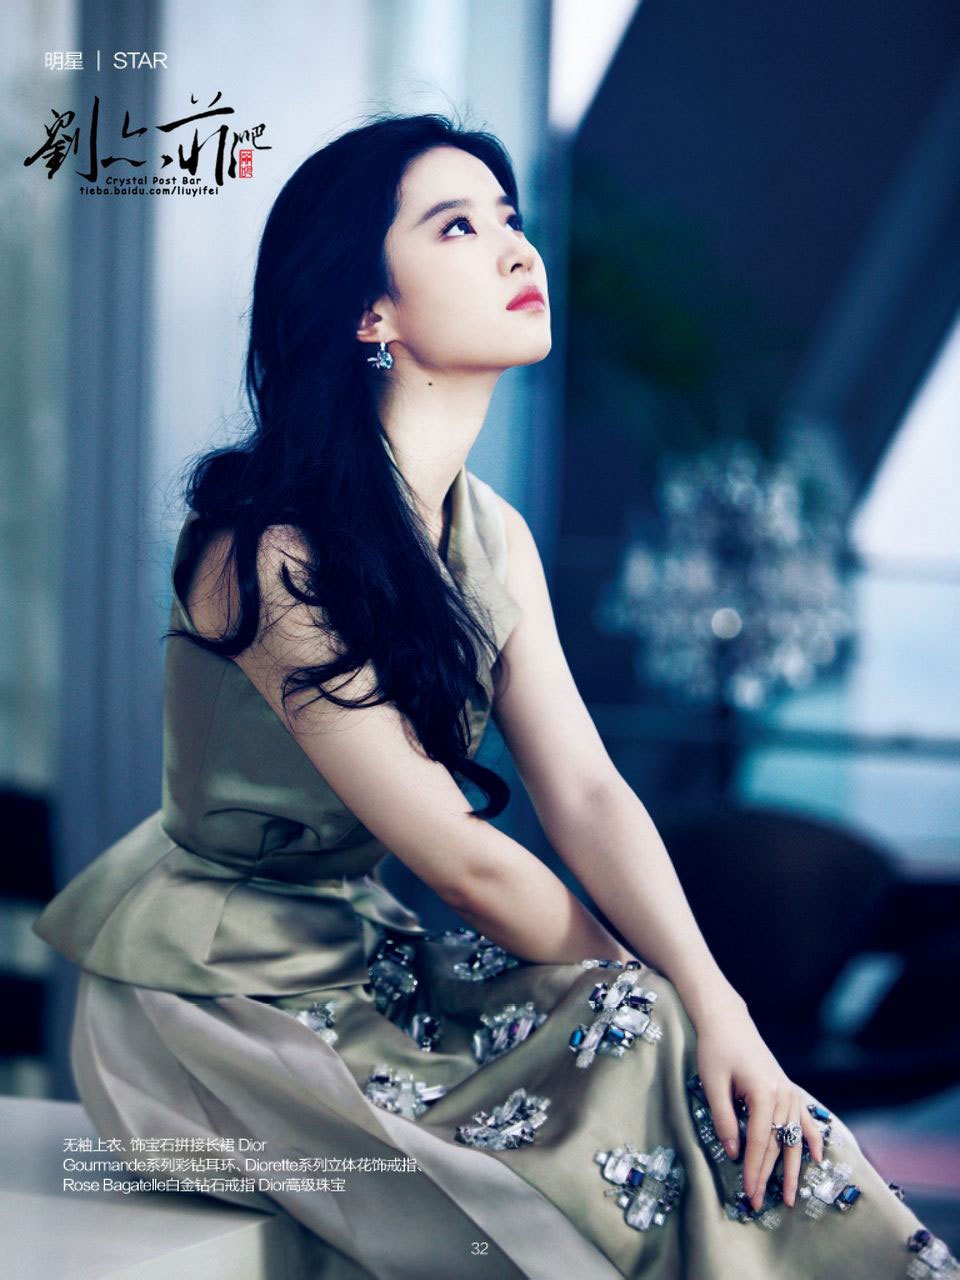 Beautiful English Girl Wallpaper Liu Yifei Cosmopolitan - China Actress Liu Yi Fei , HD Wallpaper & Backgrounds